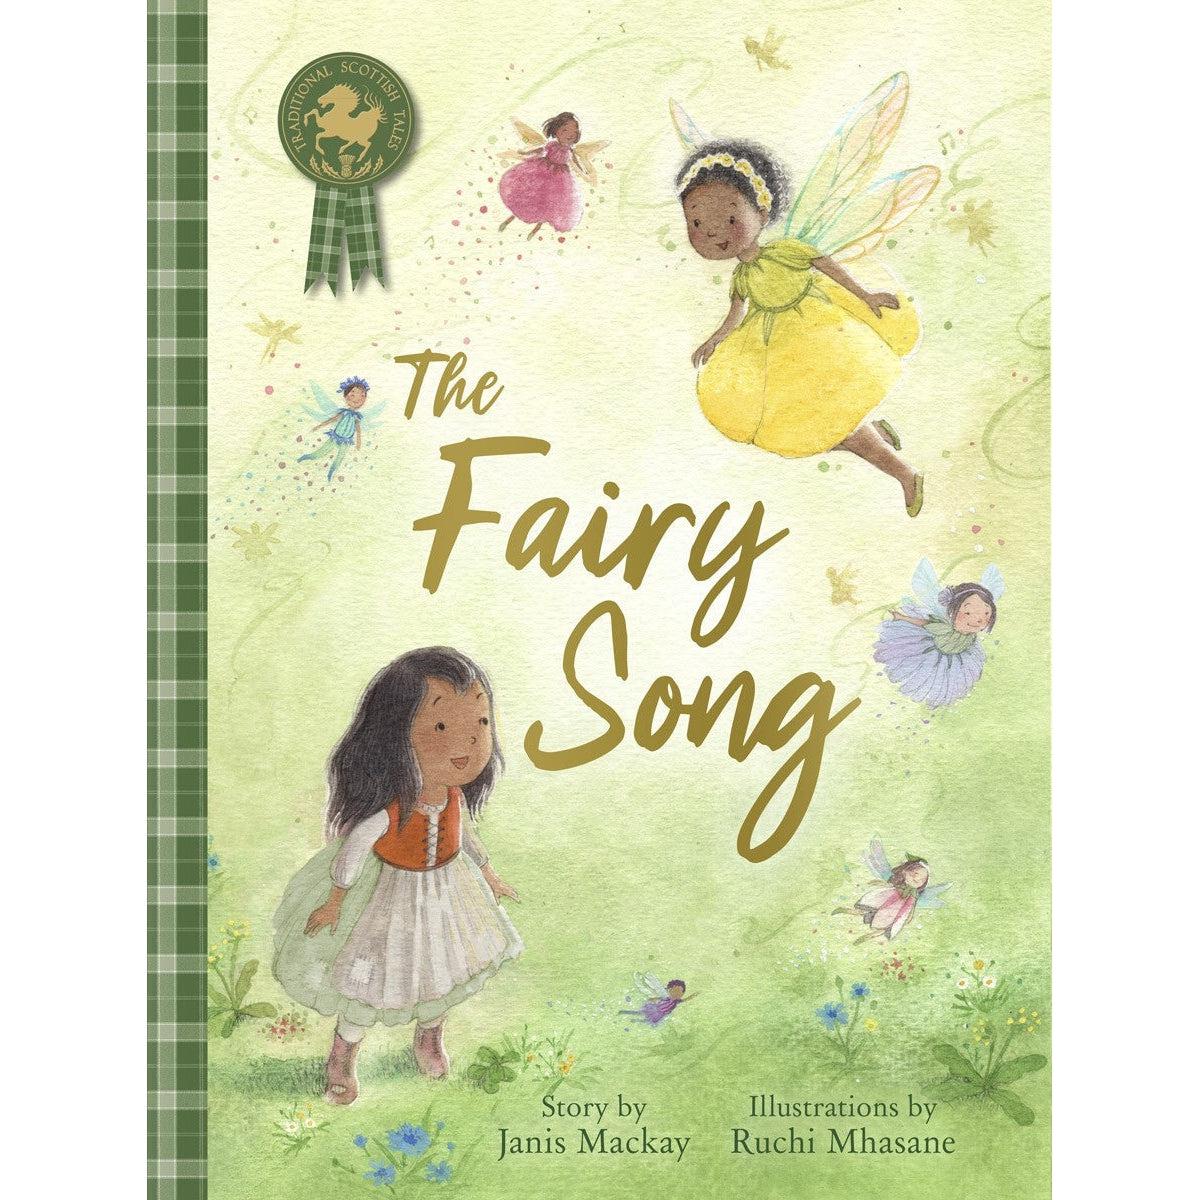 The Fairy Song - Janis Mackay & Ruchi Mhasane